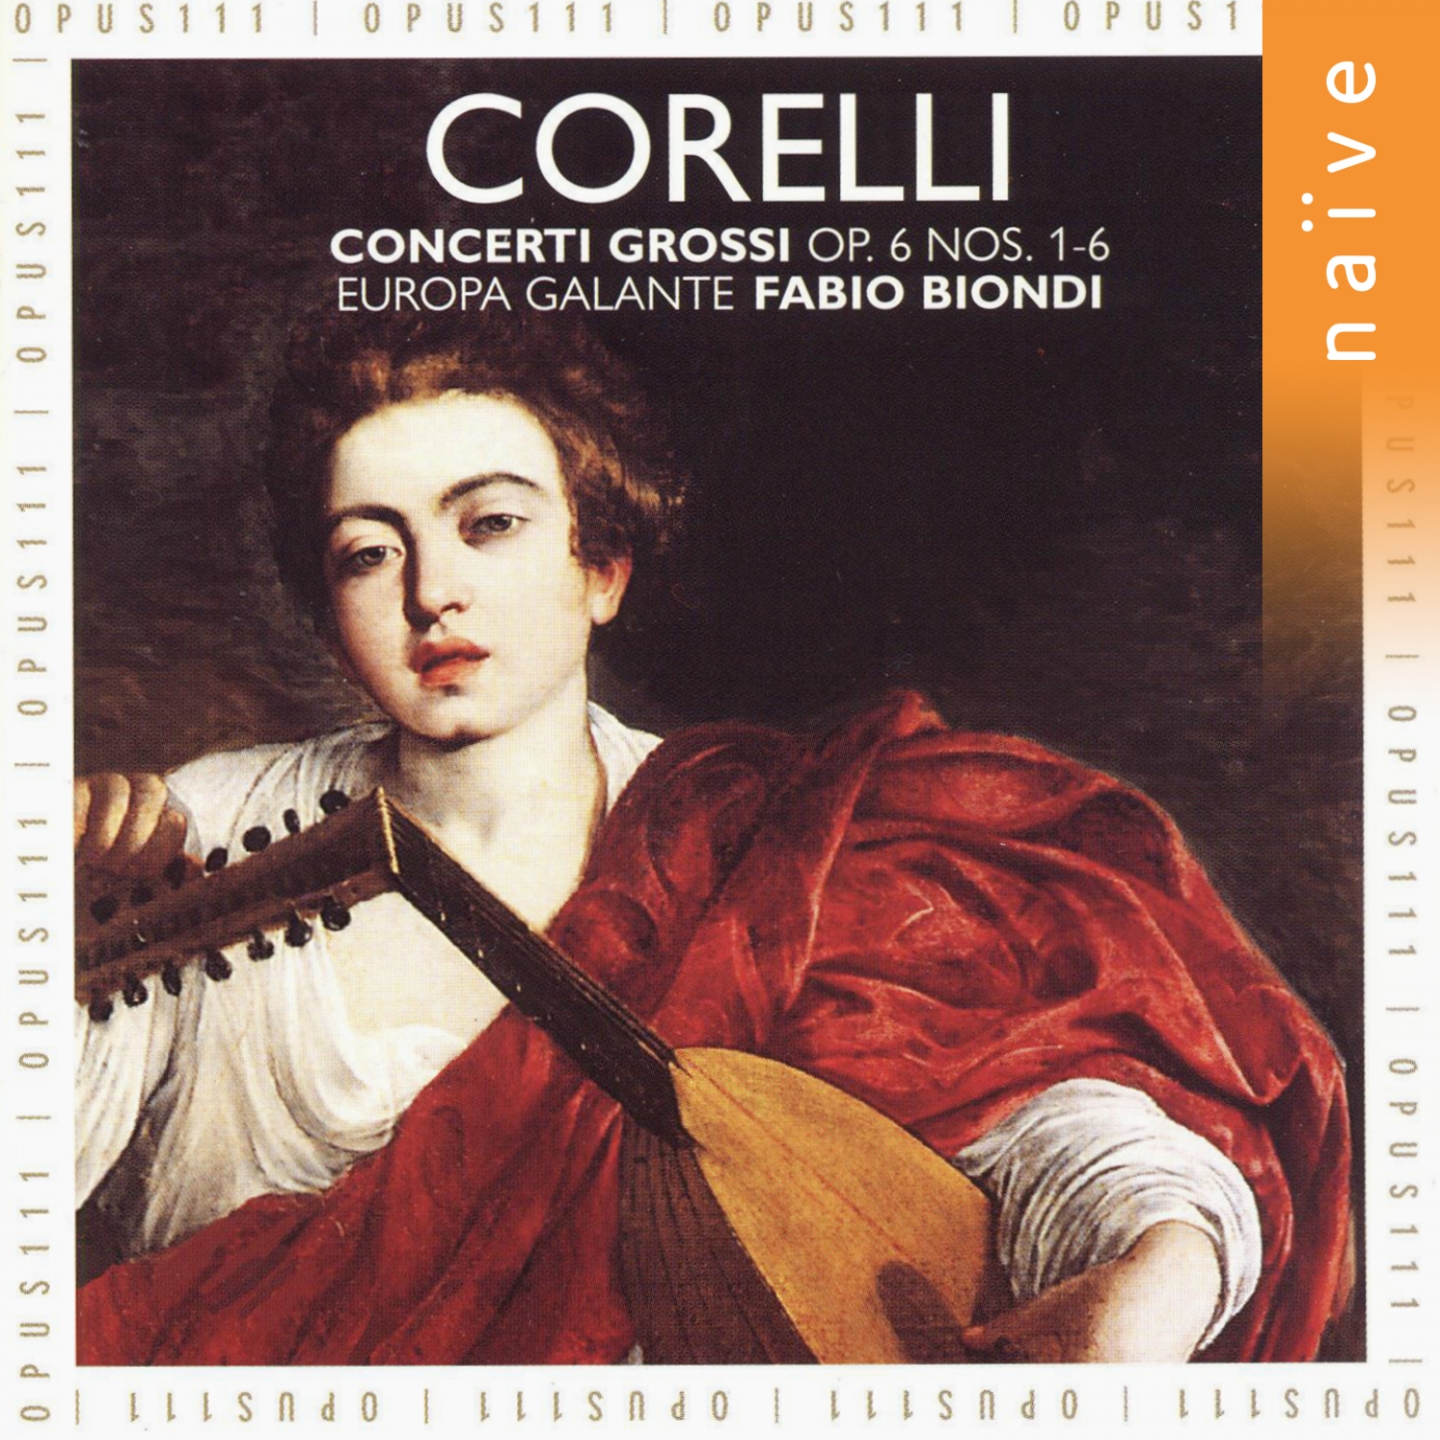 12 Concerti Grossi, Op. 6, No. 6 in F Major: III. Largo - Allegro